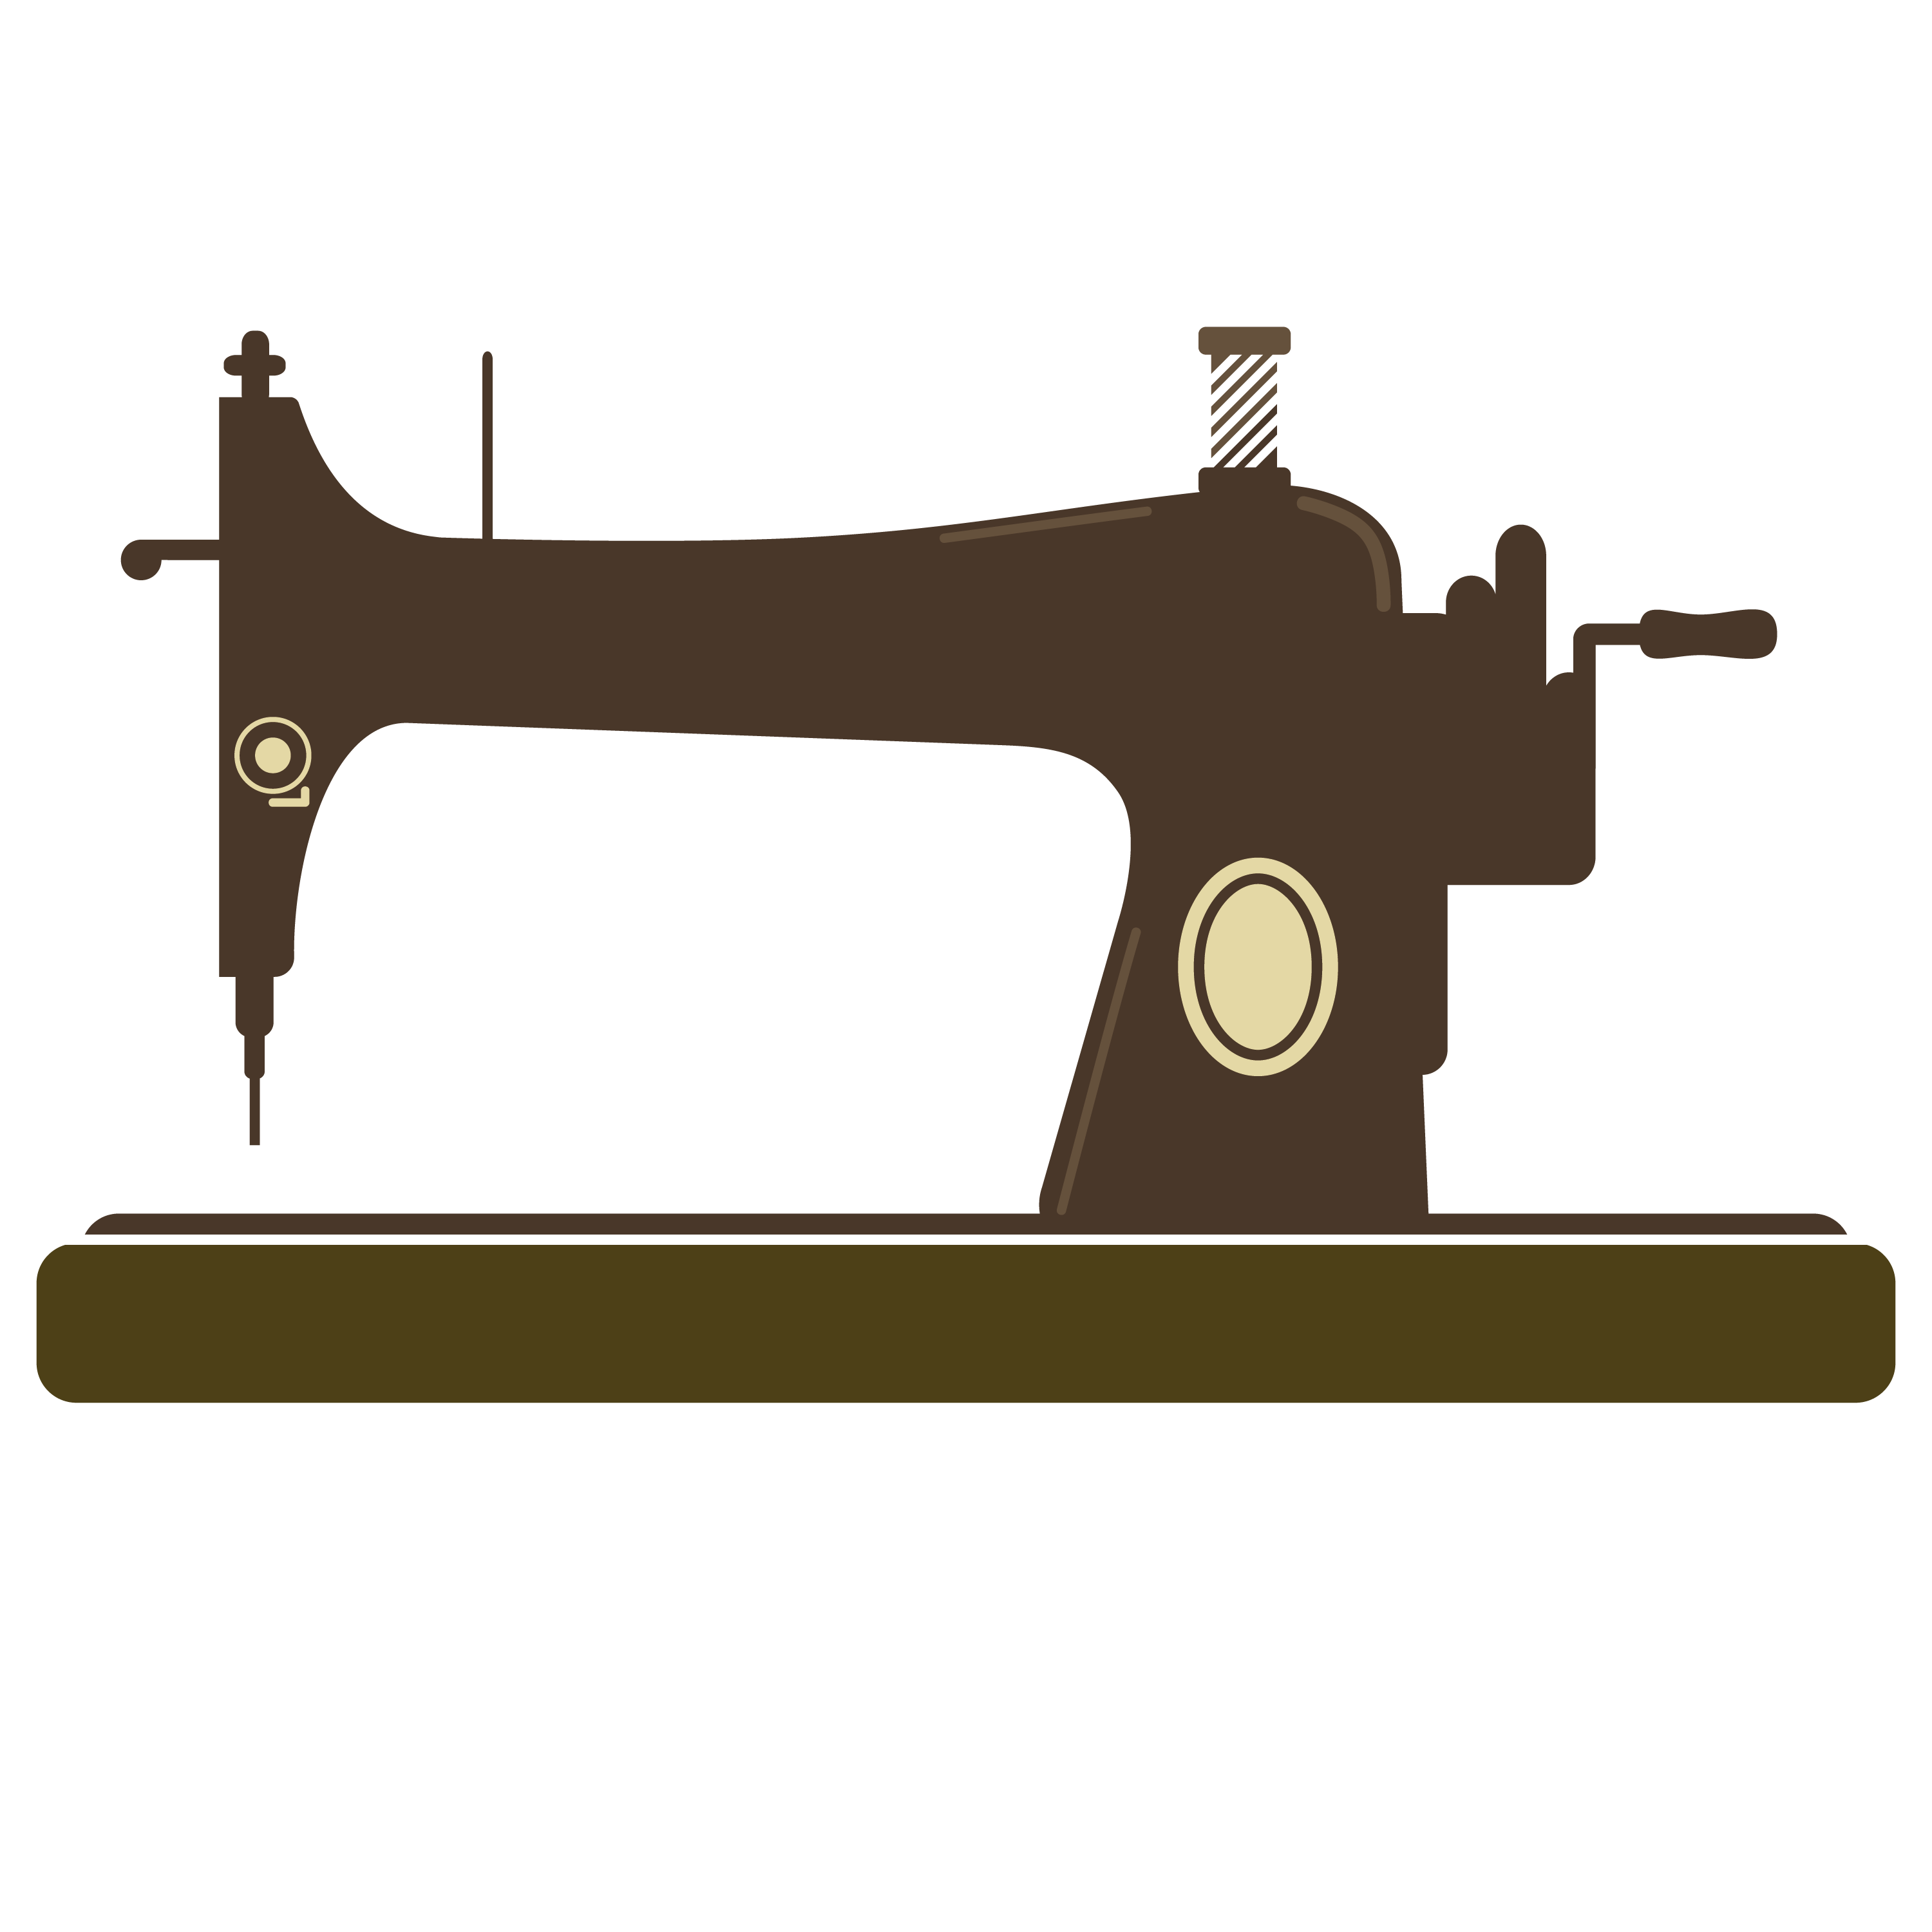 Sewing Machine Clip Art - Tumundografico